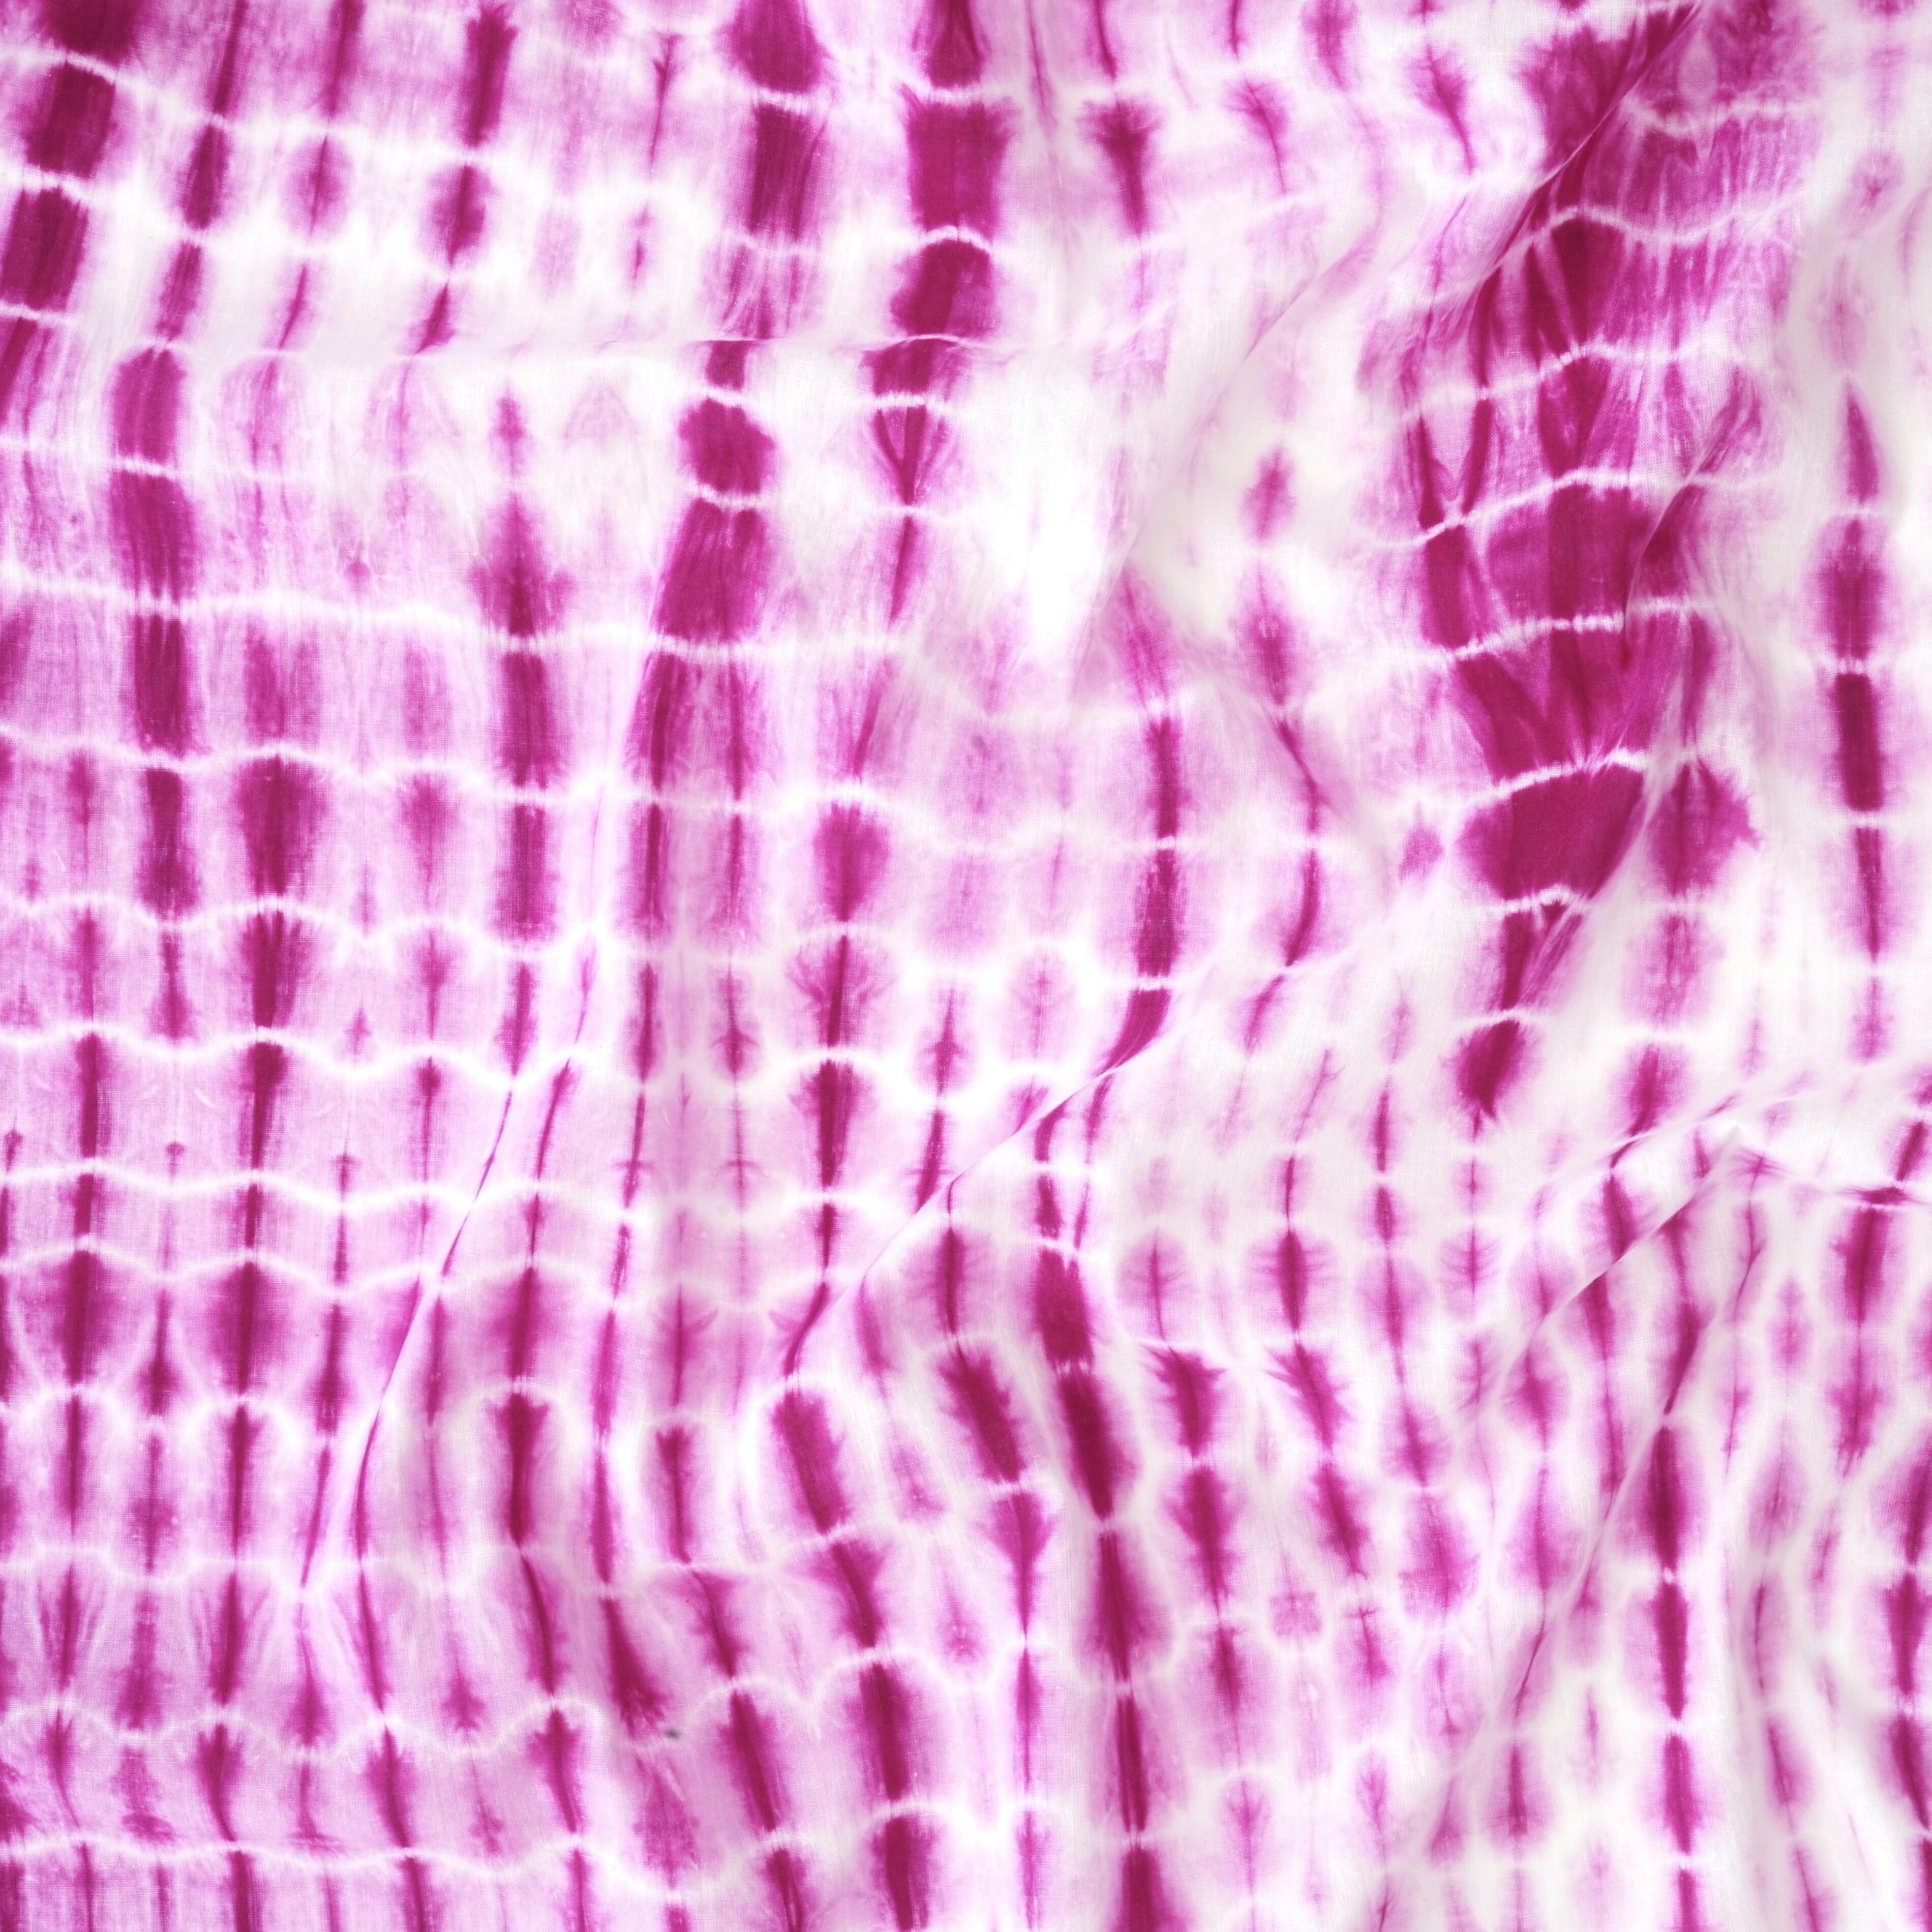 MUN07 - Tie Dye - Shibori - Cotton Cloth - Pink Dye - Contrast